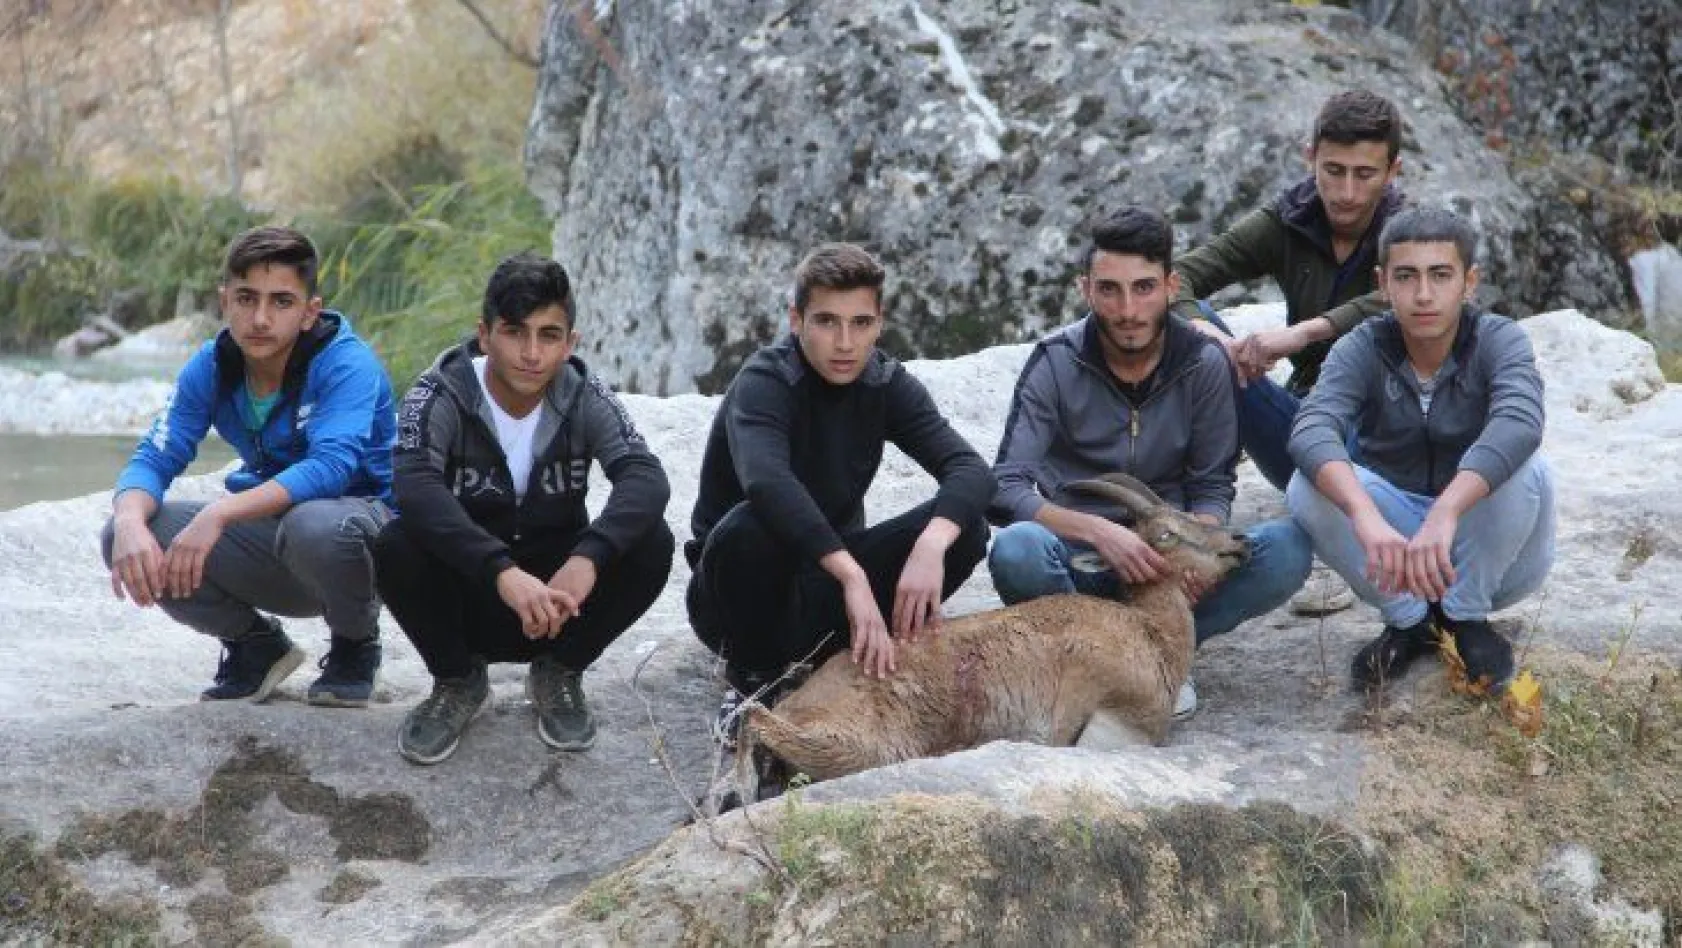 Gençler ve ekipler seferber oldu, tüm çabaya rağmen yaban keçisi kurtarılamadı